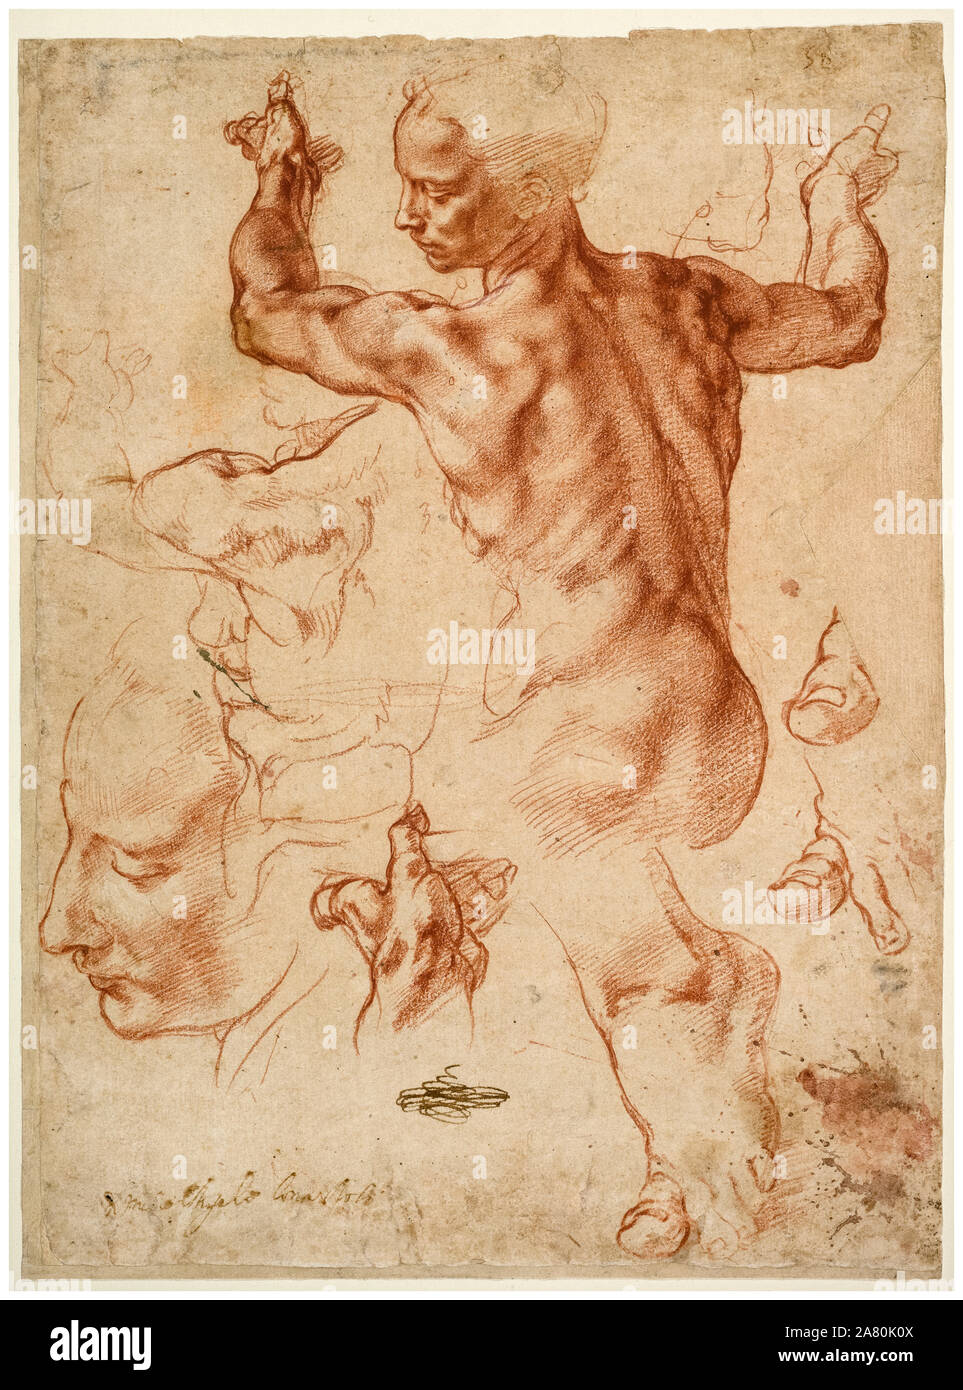 Michelangelo Buonarroti, estudios para la sibila libia, dibujo, circa 1510 Foto de stock